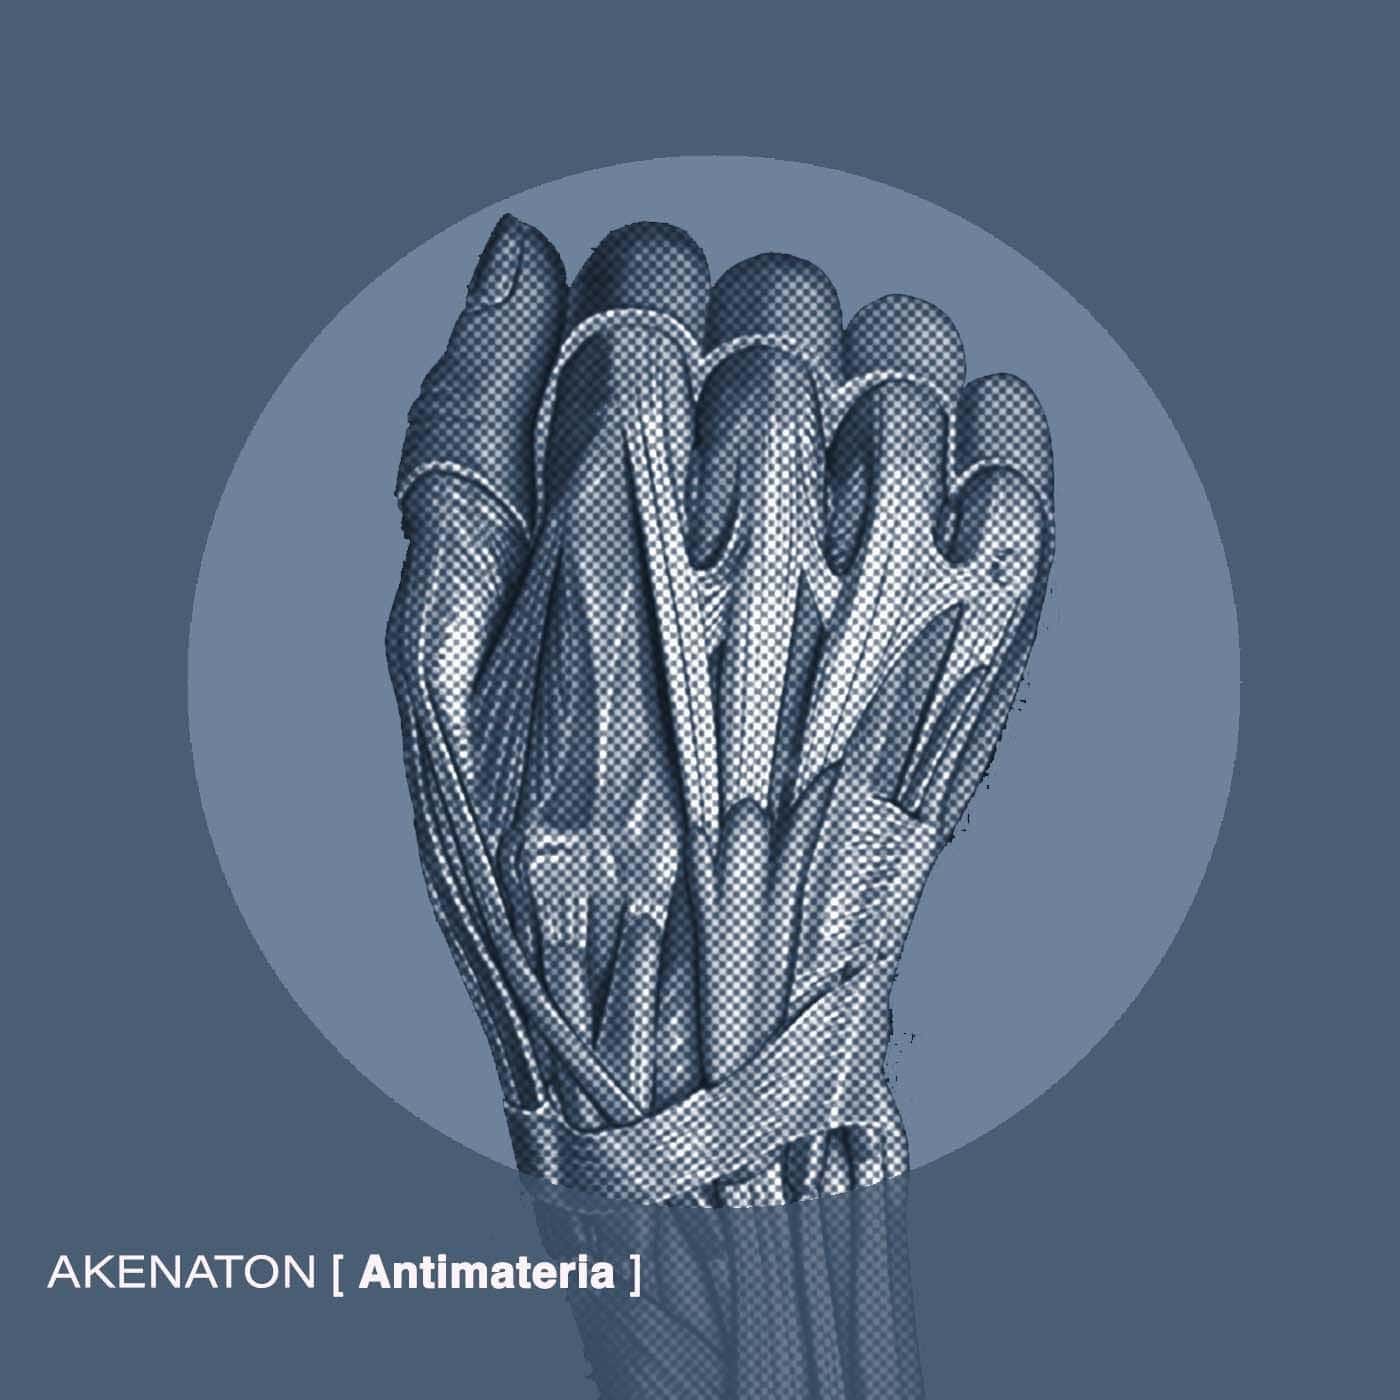 Download Akenaton - Antimateria on Electrobuzz